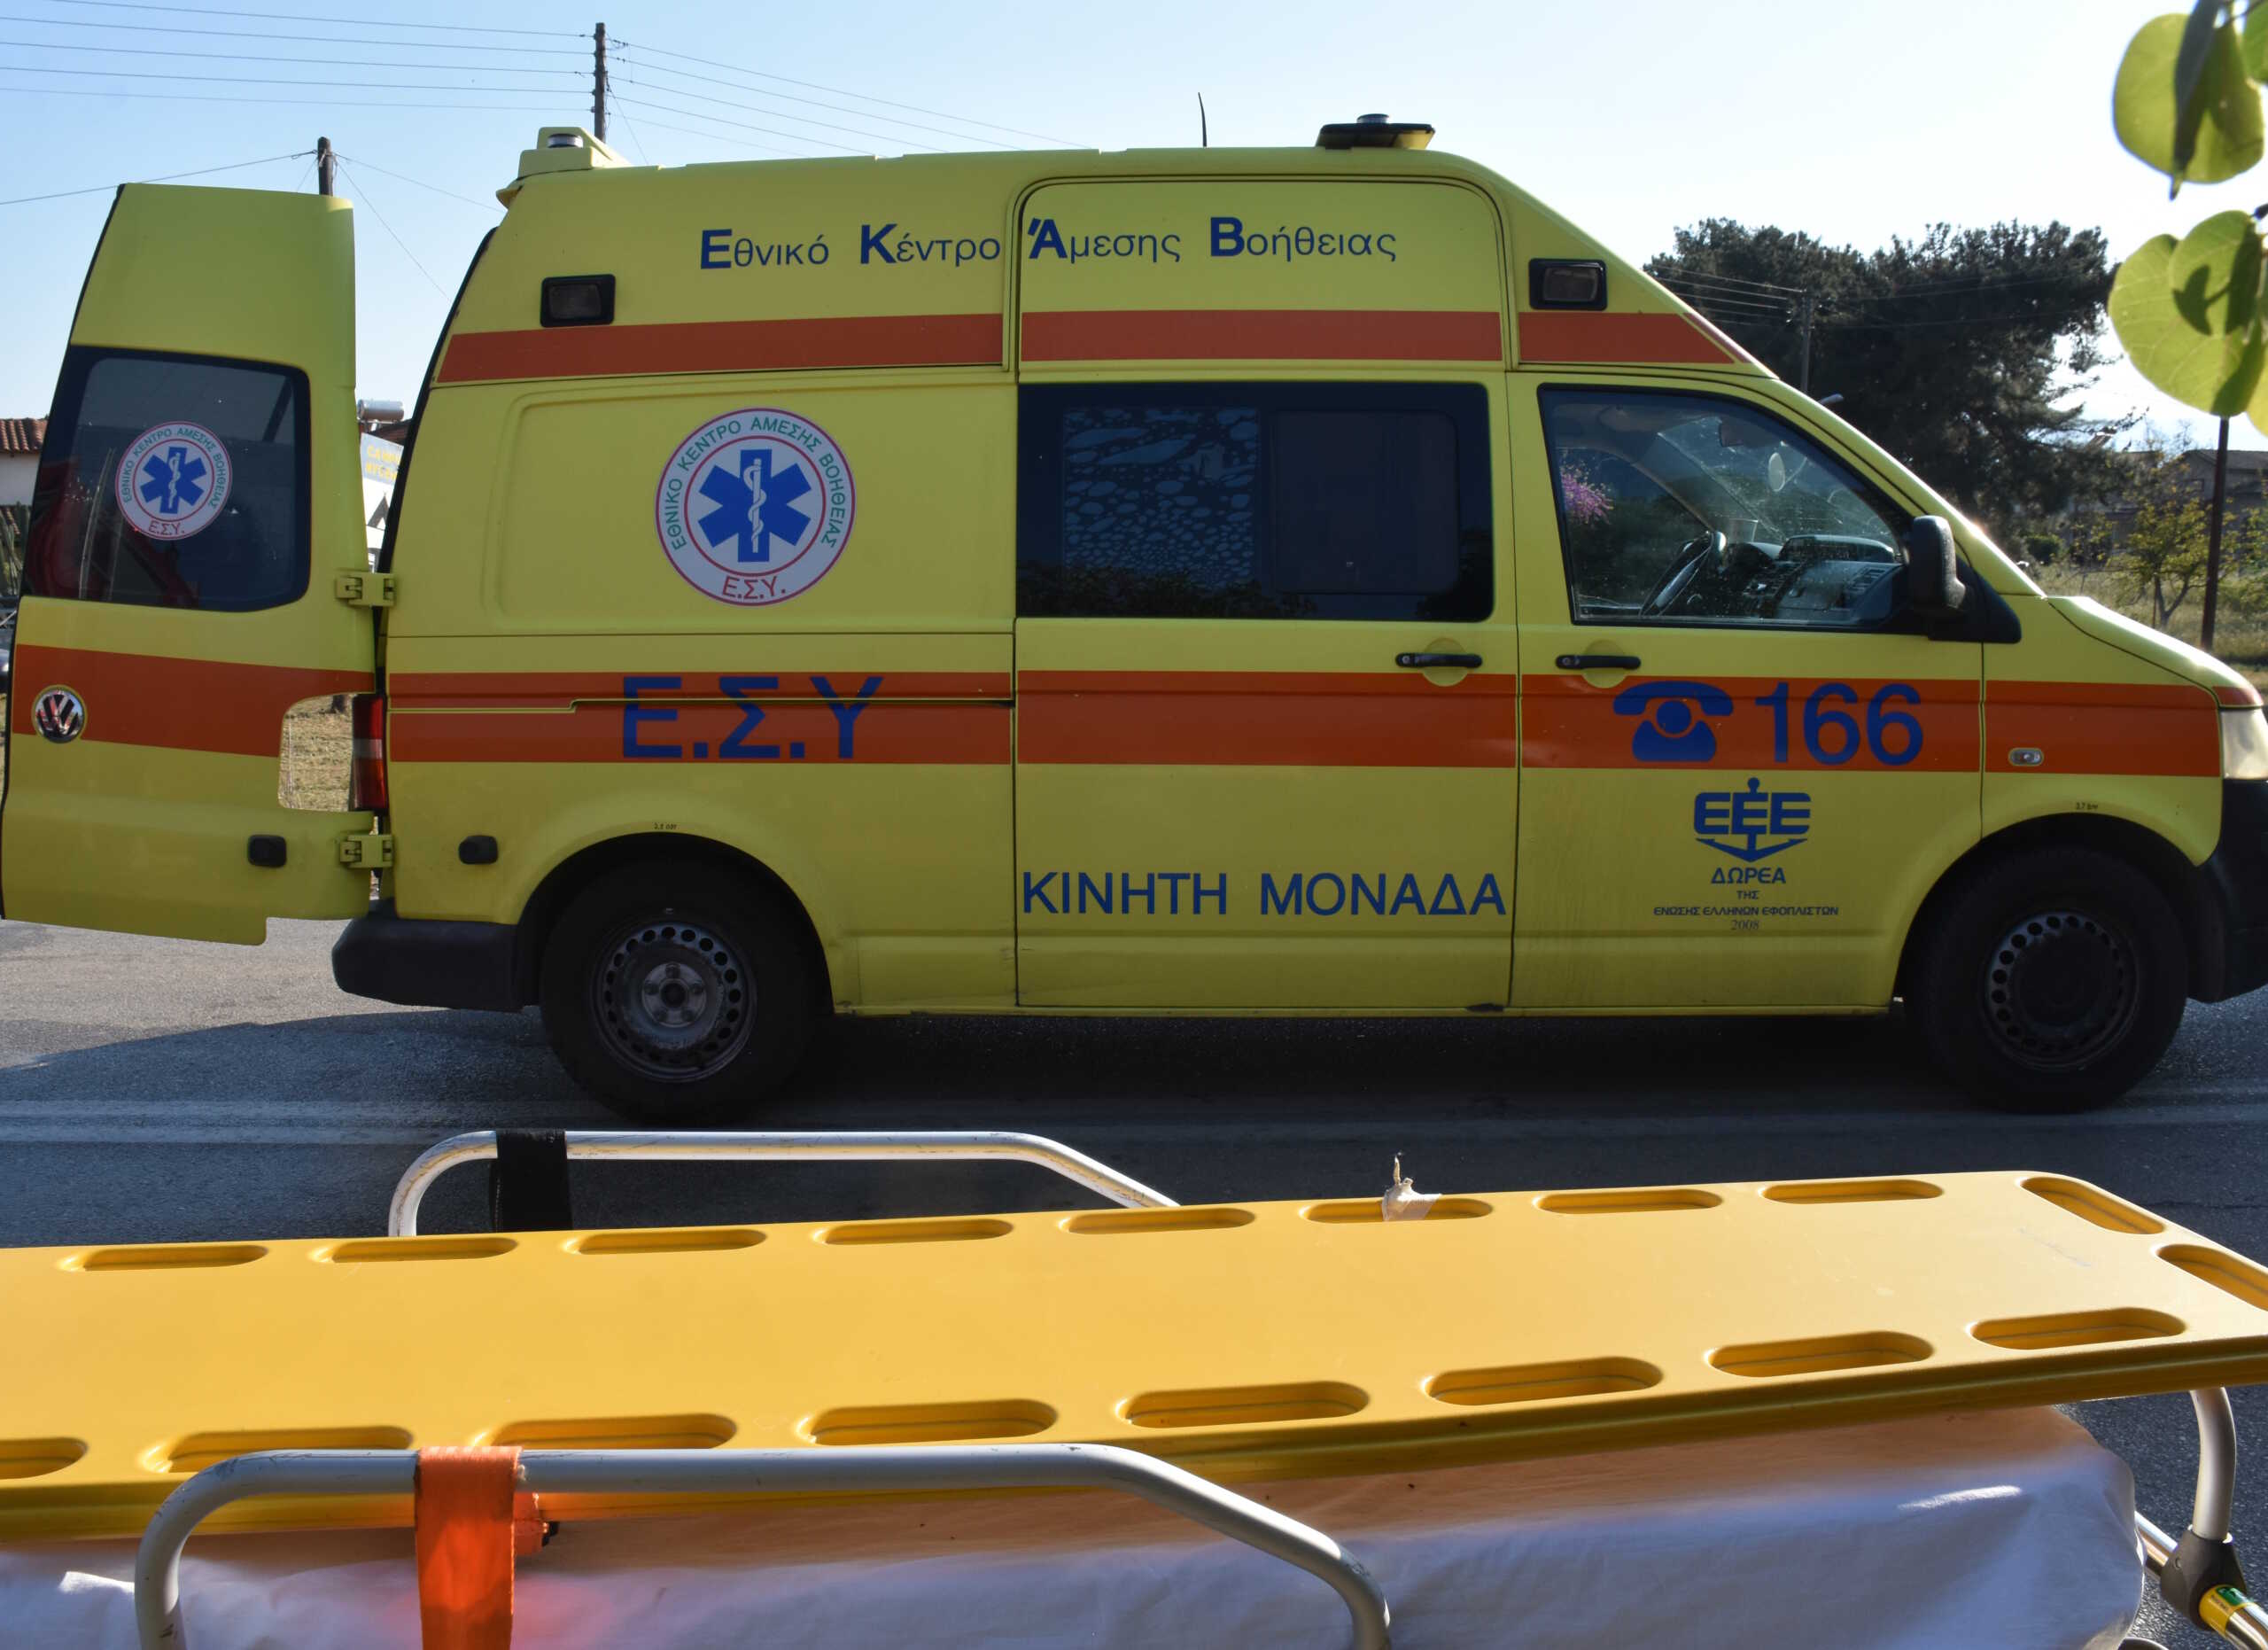 Θεσσαλονίκη: Νεκρός 18χρονος σε τροχαίο – Βαριά τραυματισμένος ο πατέρας του